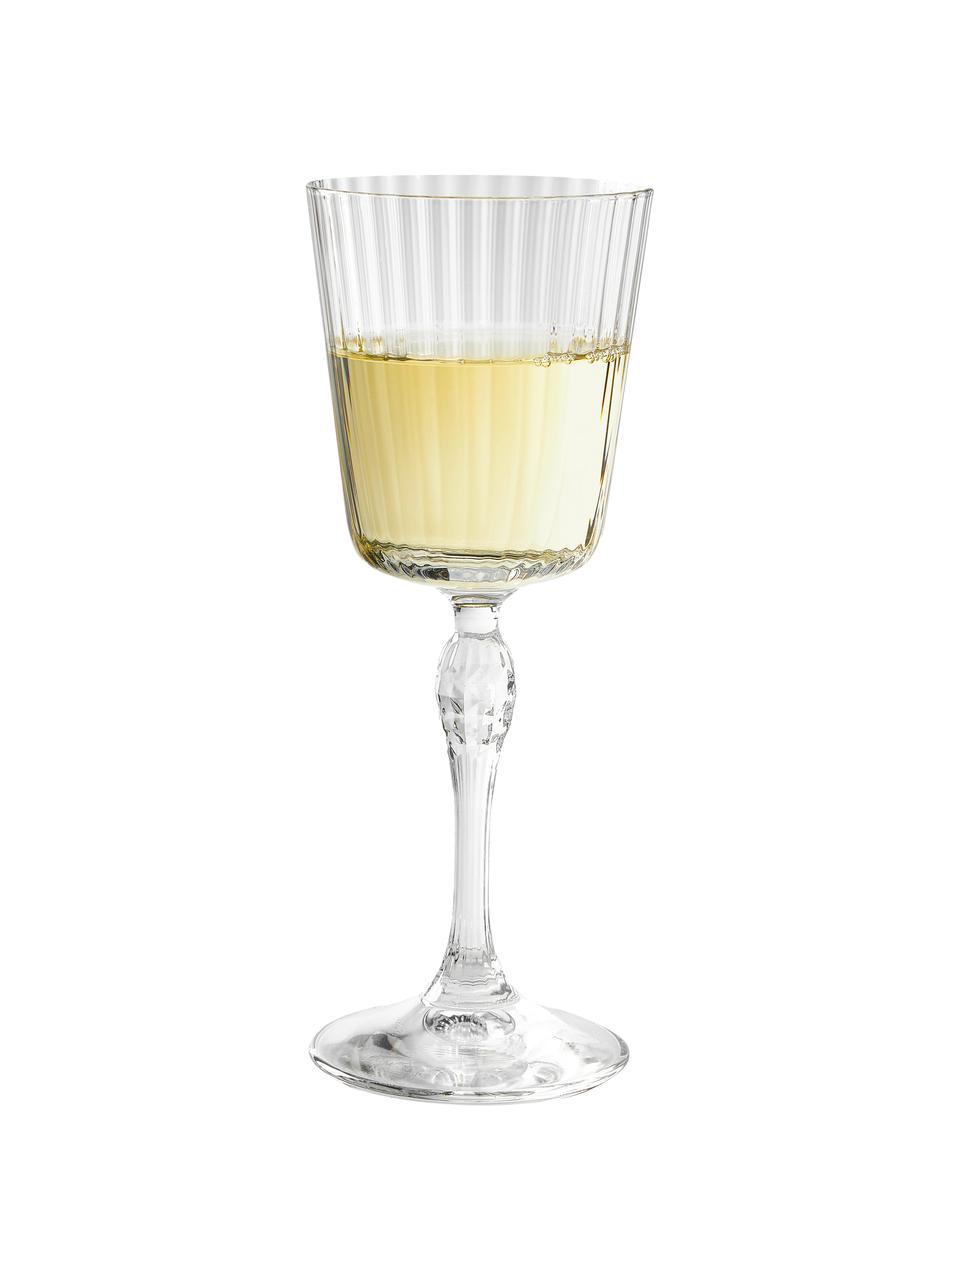 Weingläser America's Cocktail mit Rillenstruktur, 4 Stück, Glas, Transparent, Ø 8 x H 20 cm, 240 ml